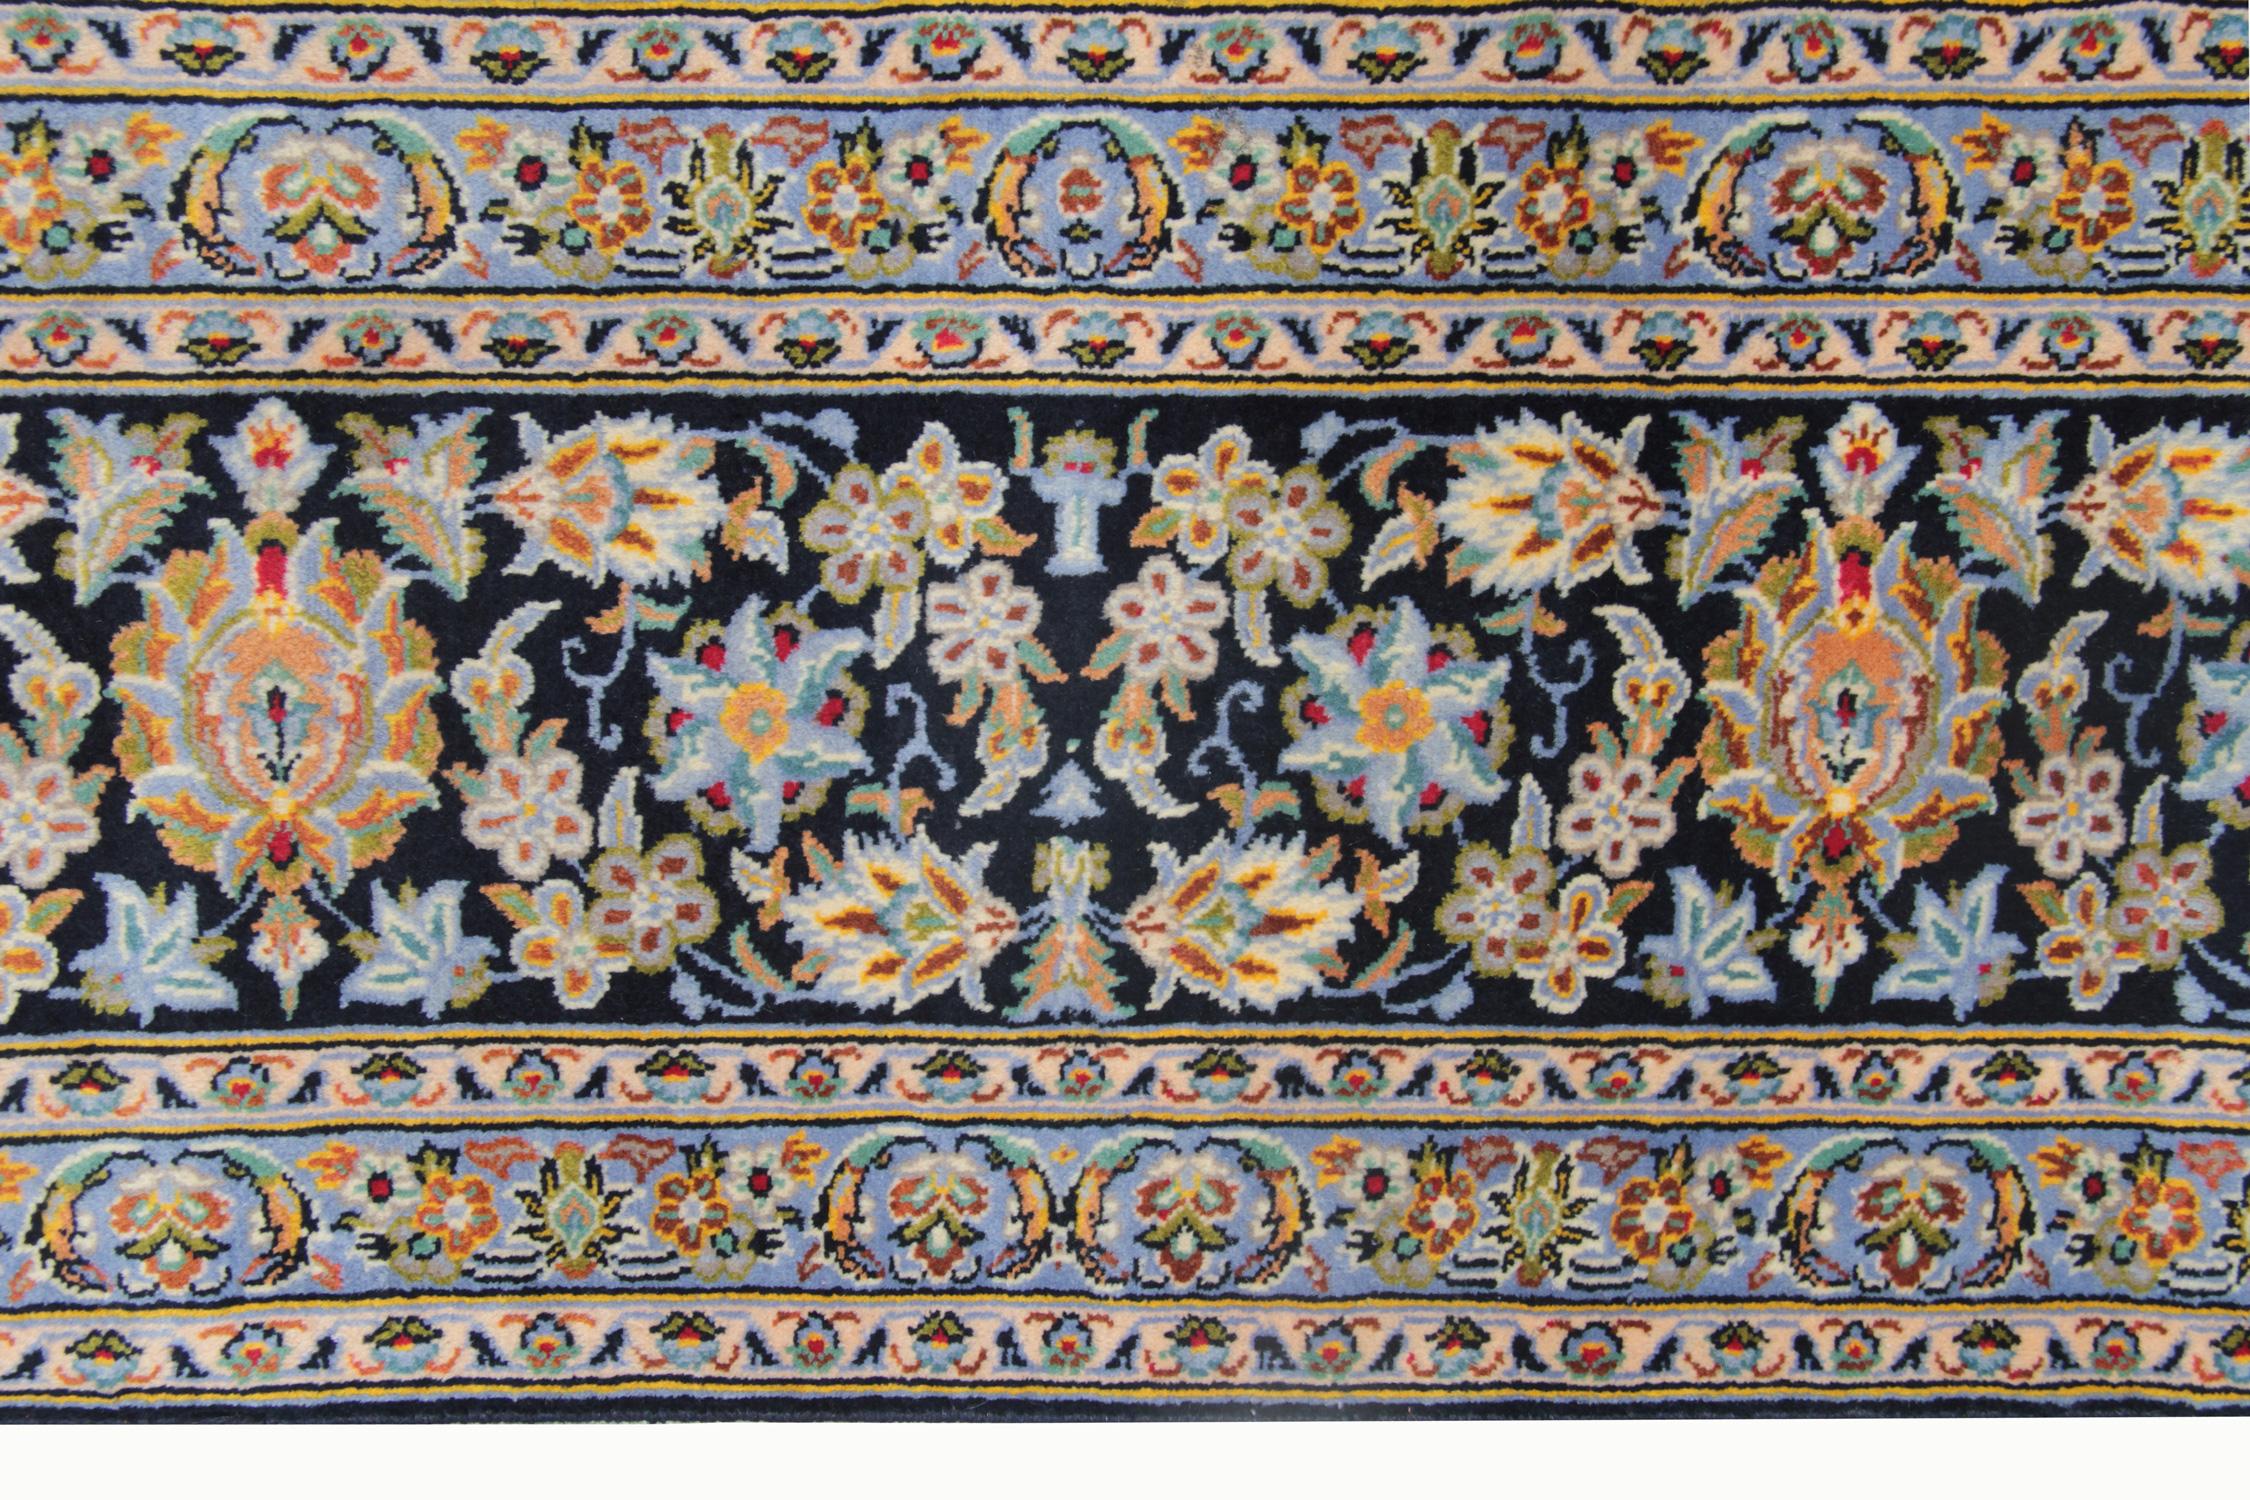 Dieses Stück ist ein hervorragendes Beispiel für Medaillon Teppiche, von Hand gewebt diese Wolle Teppich verfügt über eine ausgezeichnete Medaillon-Design mit einer symmetrischen Umgebung mit floralen Motiven gewebt. Dieses raffiniert gewebte Stück